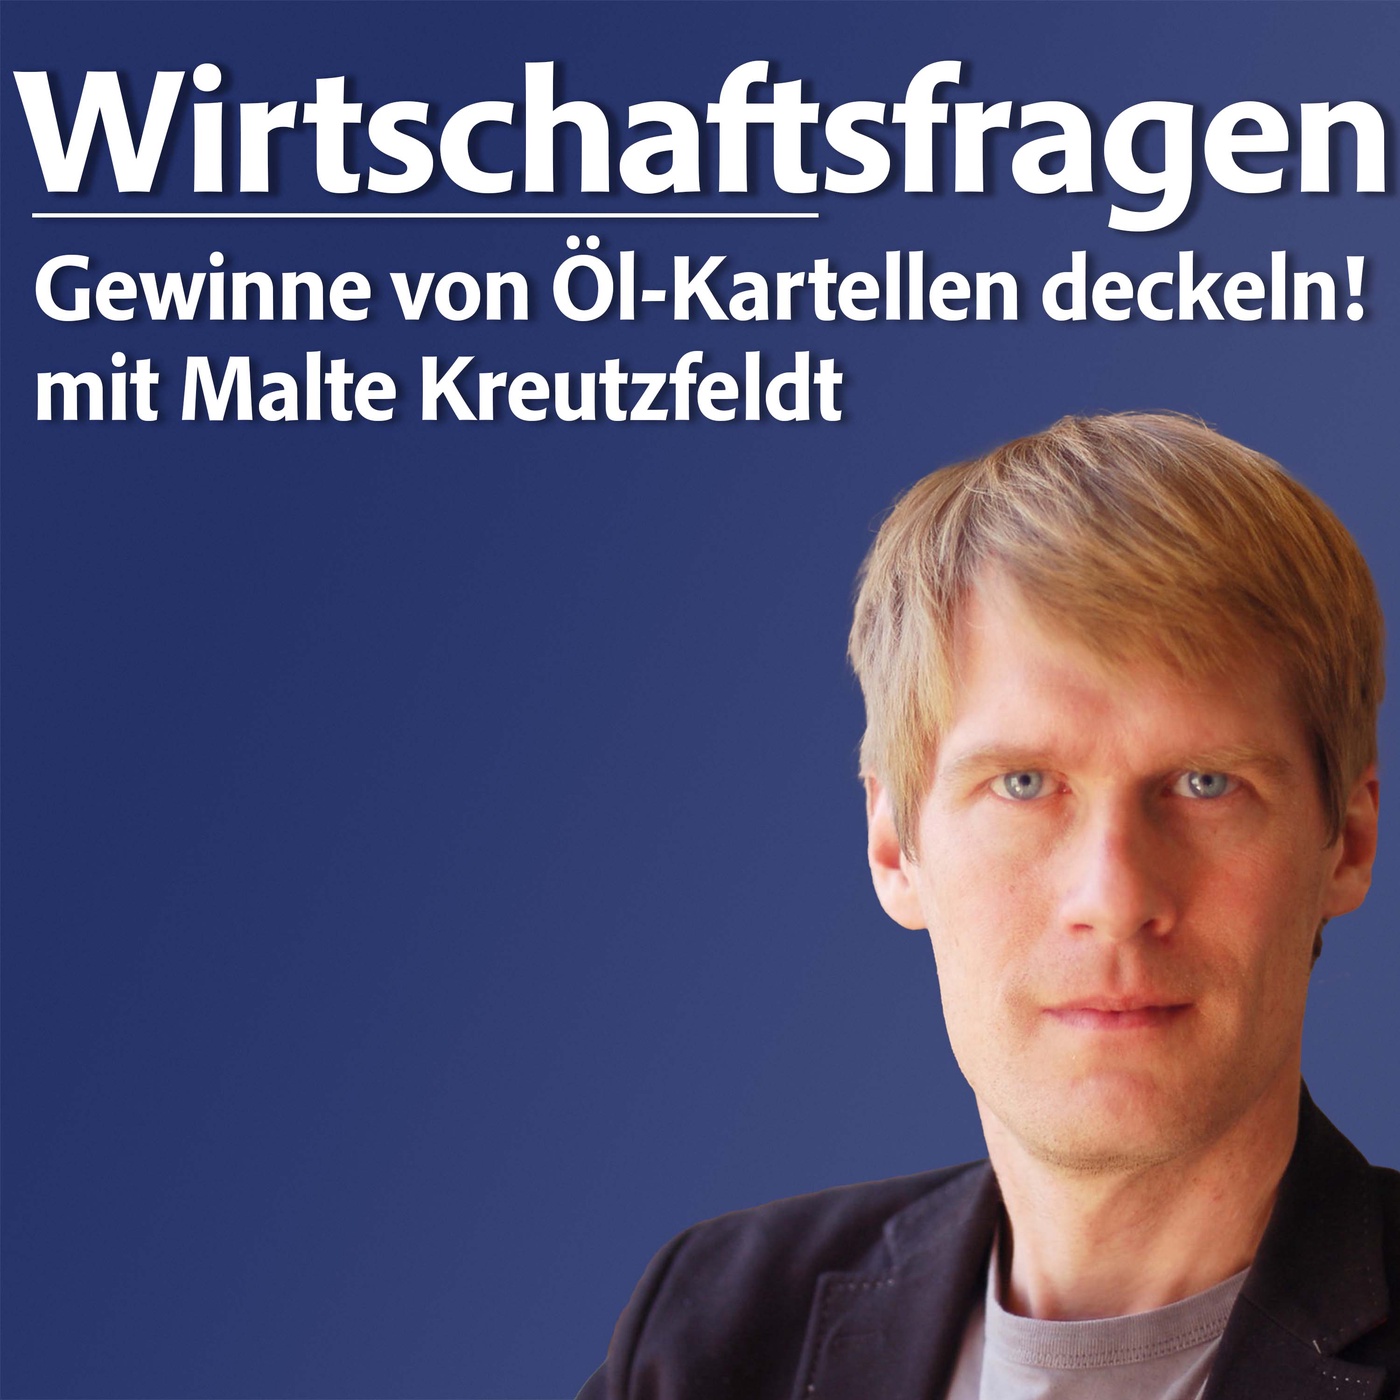 Gewinne von Öl-Kartellen deckeln! - mit Malte Kreutzfeldt